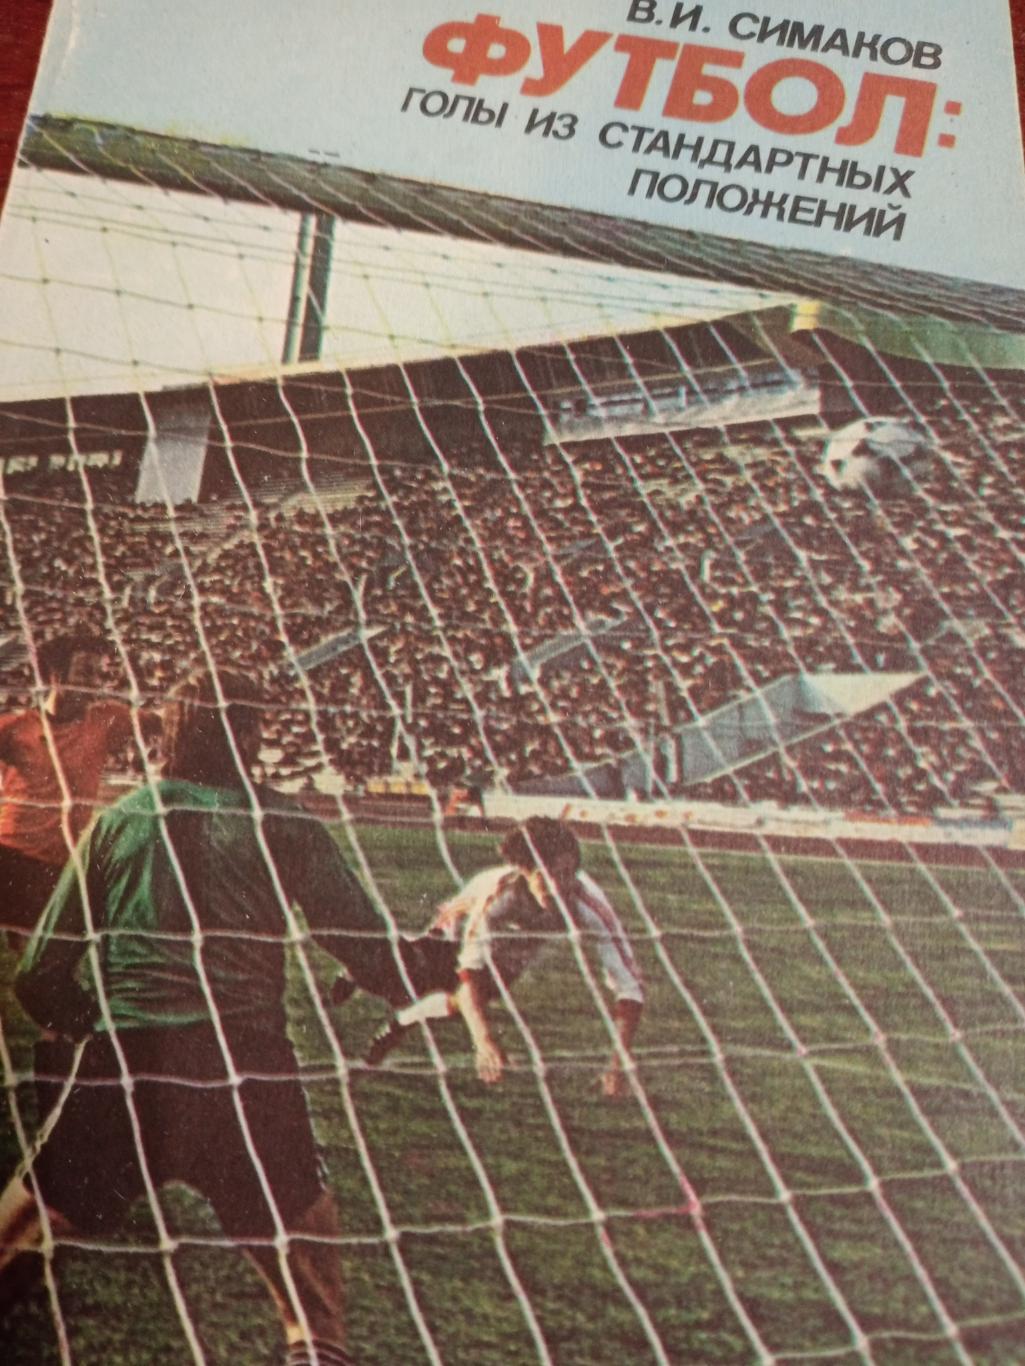 В.Симаков Футбол: голы из стандартных положений. Изд. ФиС, 1982